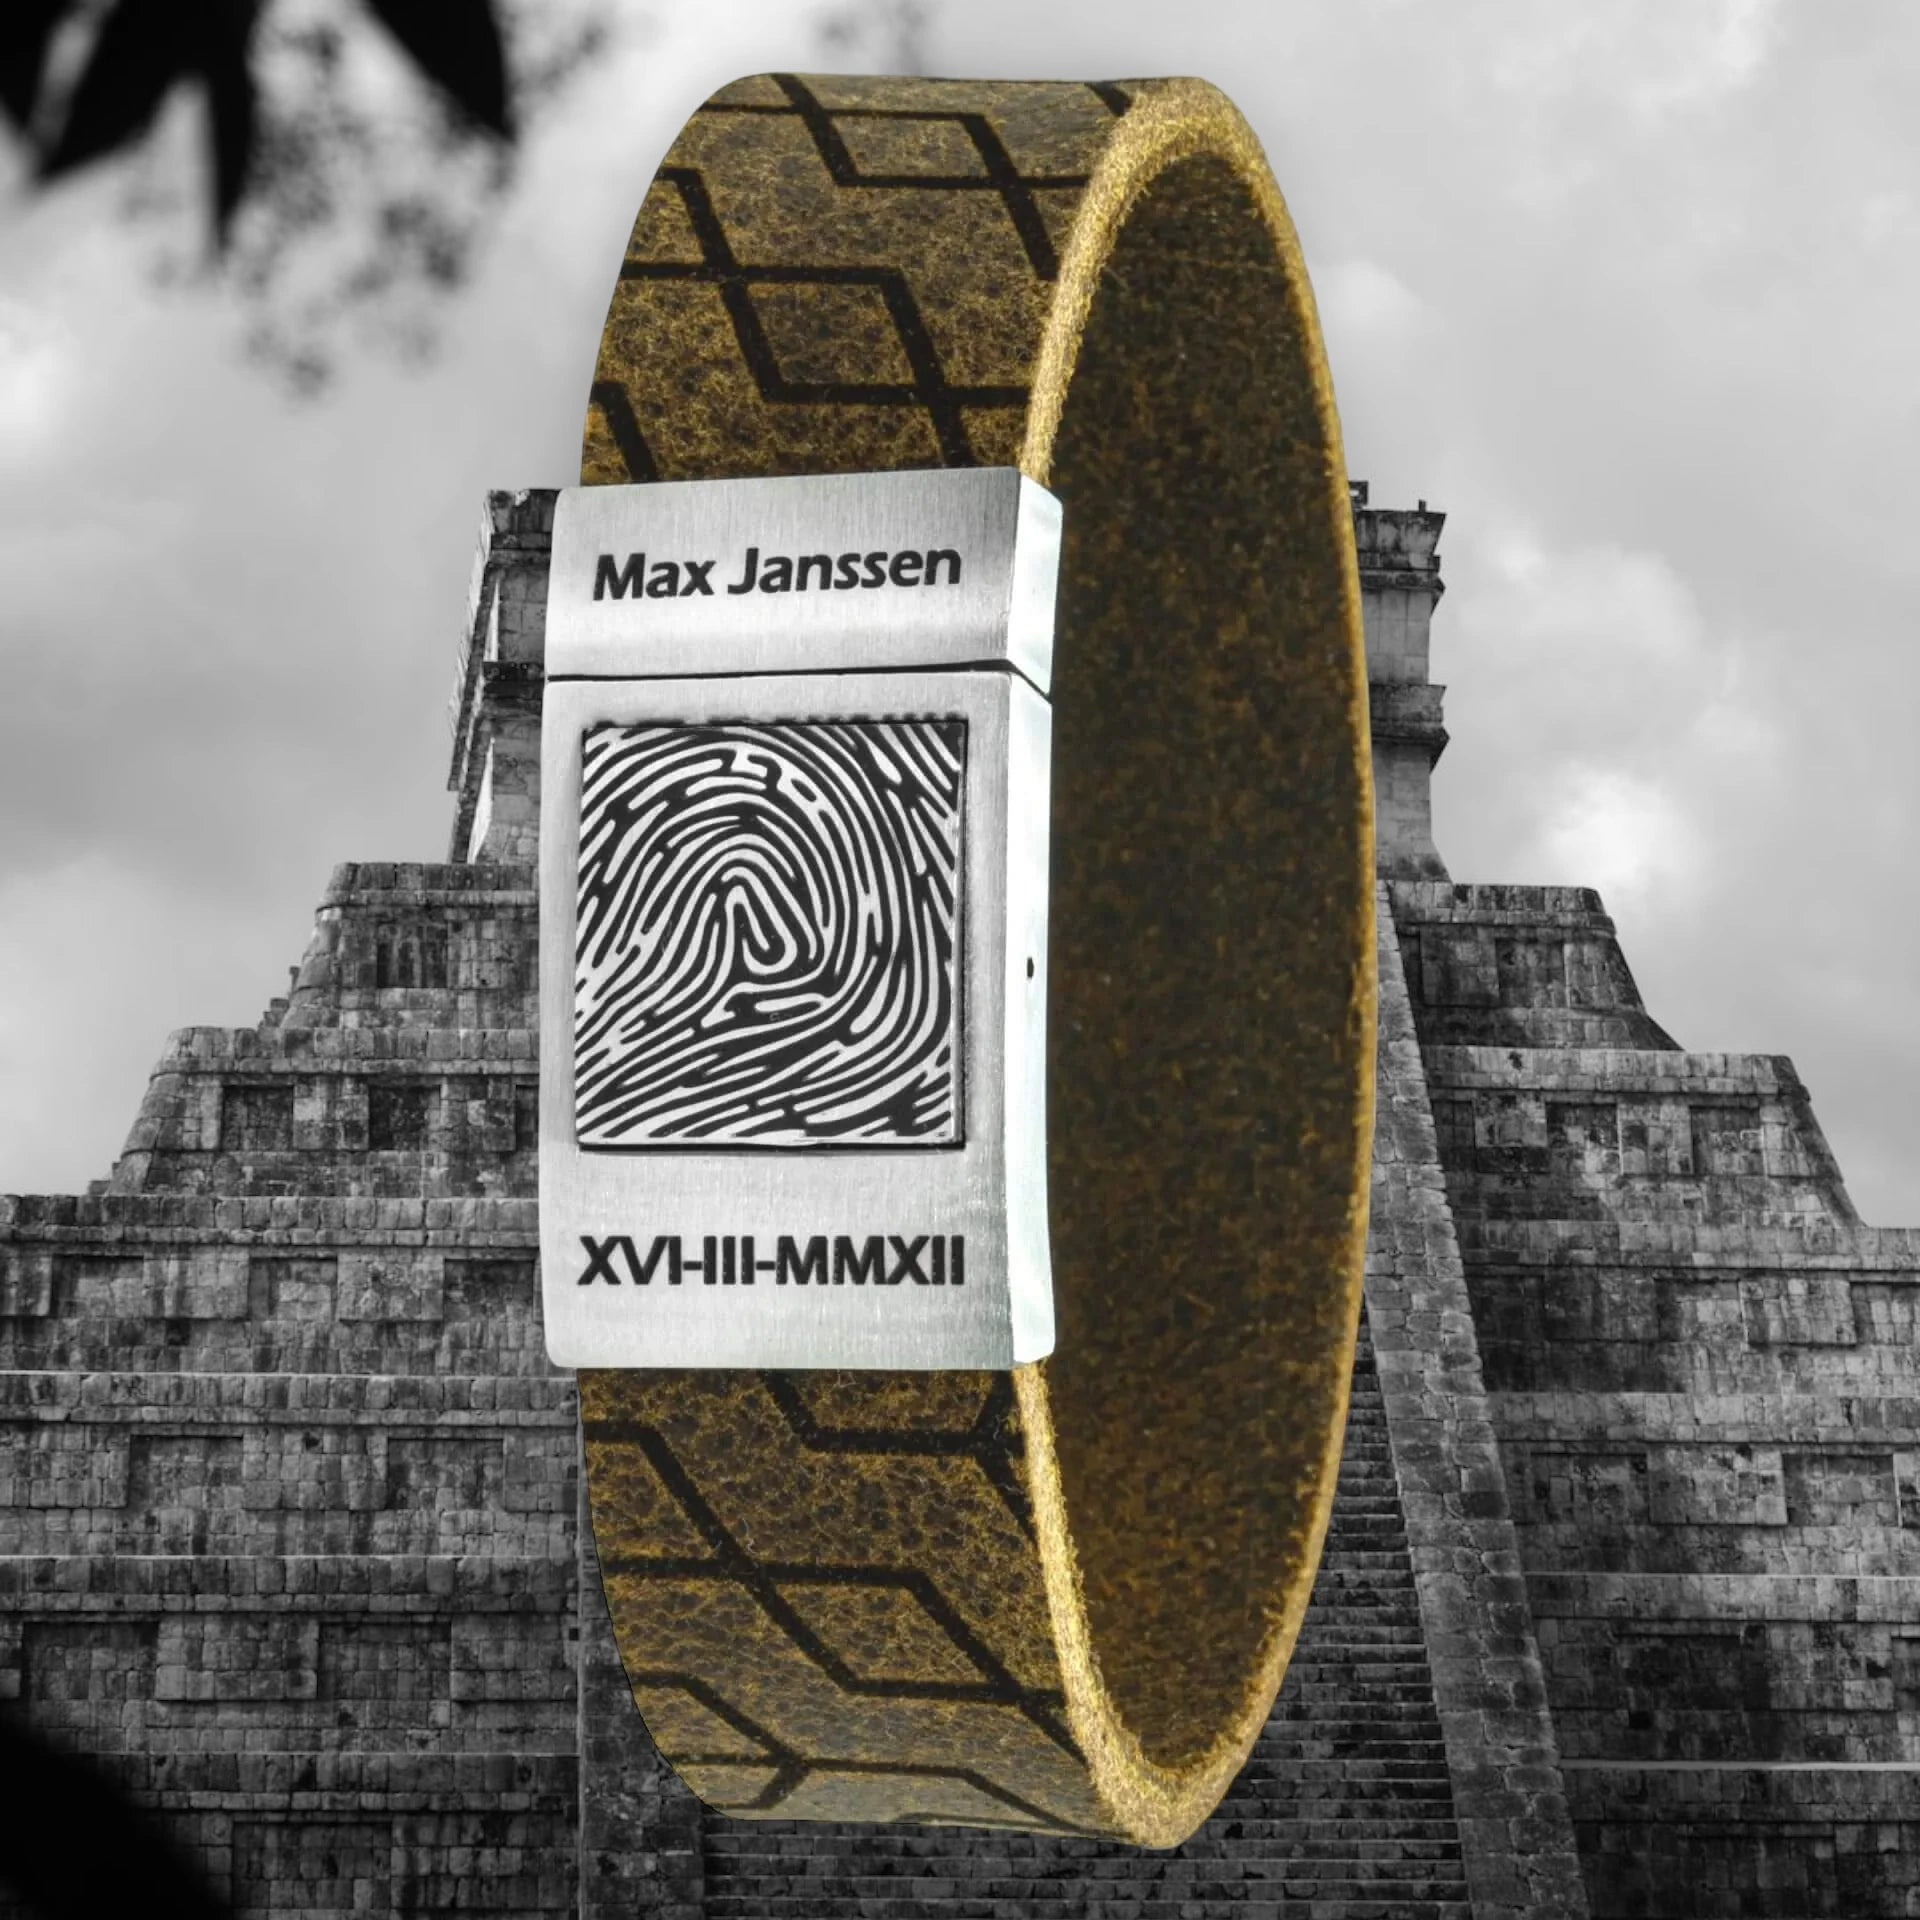 Mayans - Own fingerprint bracelet made of Vintage leather